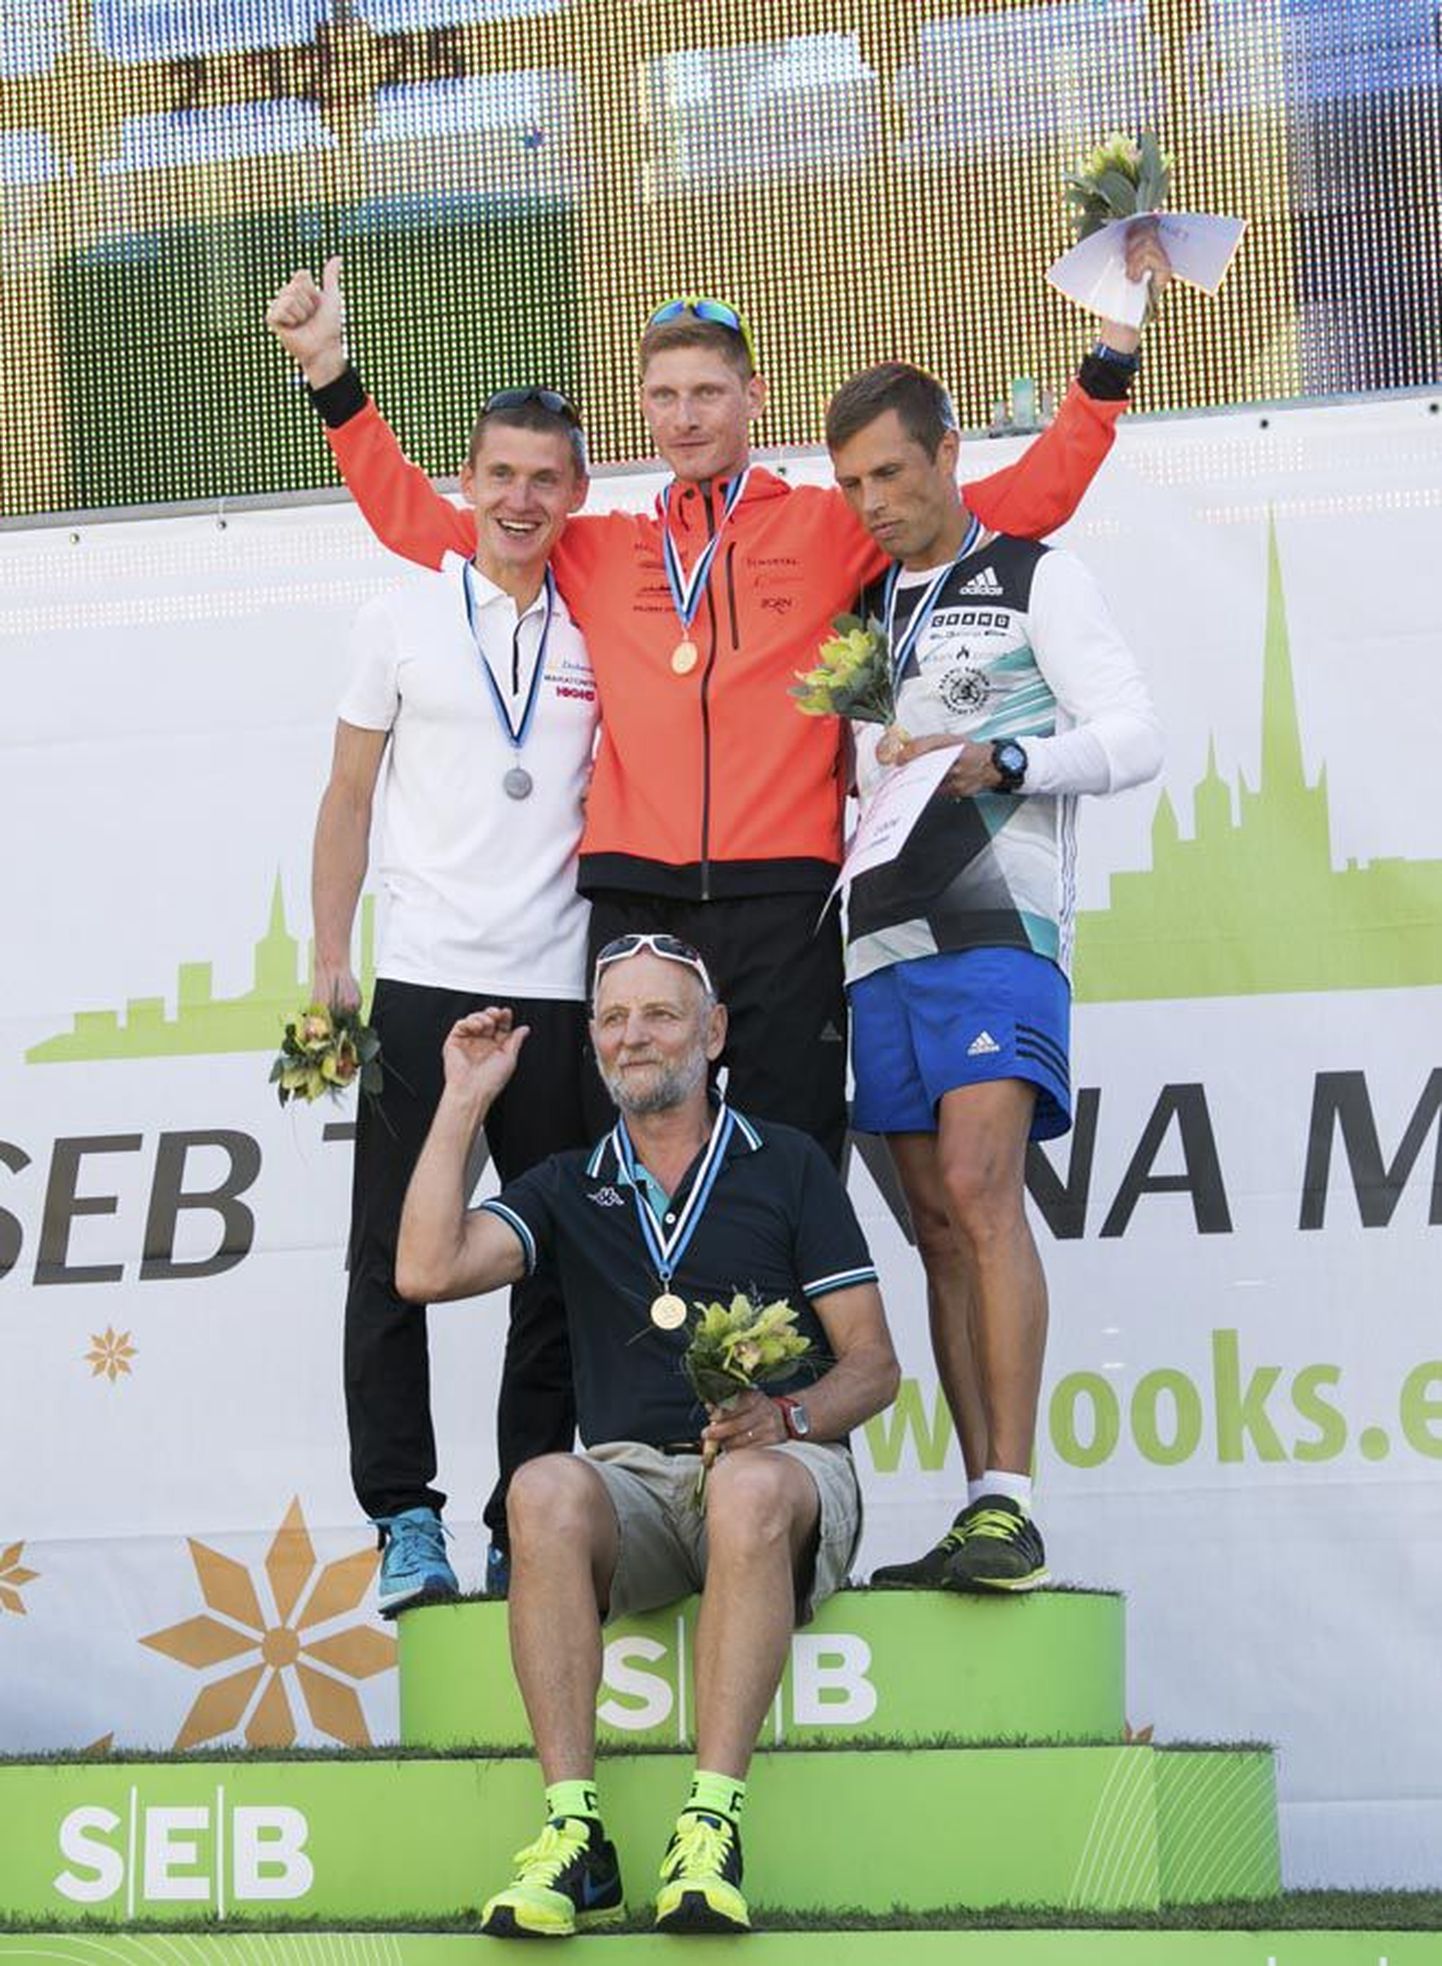 Heinar Vaine teenis SEB Tallinna maratonil oma sportlaskarjääri teise Eesti täiskasvanute meistri medali. Autasustamistseremoonial oli tal võimalus kõrgeimal astmel triumfeerida aga esimest korda. Traditsiooniliselt tunnustati autasustamisel ka meistri juhendajat. Vaine treener on Ants Kuusik. Võitja kõrval seisavad hõbeda saanud Kaupo Sasmin ja pronksi teeninud Priit Lehismets.